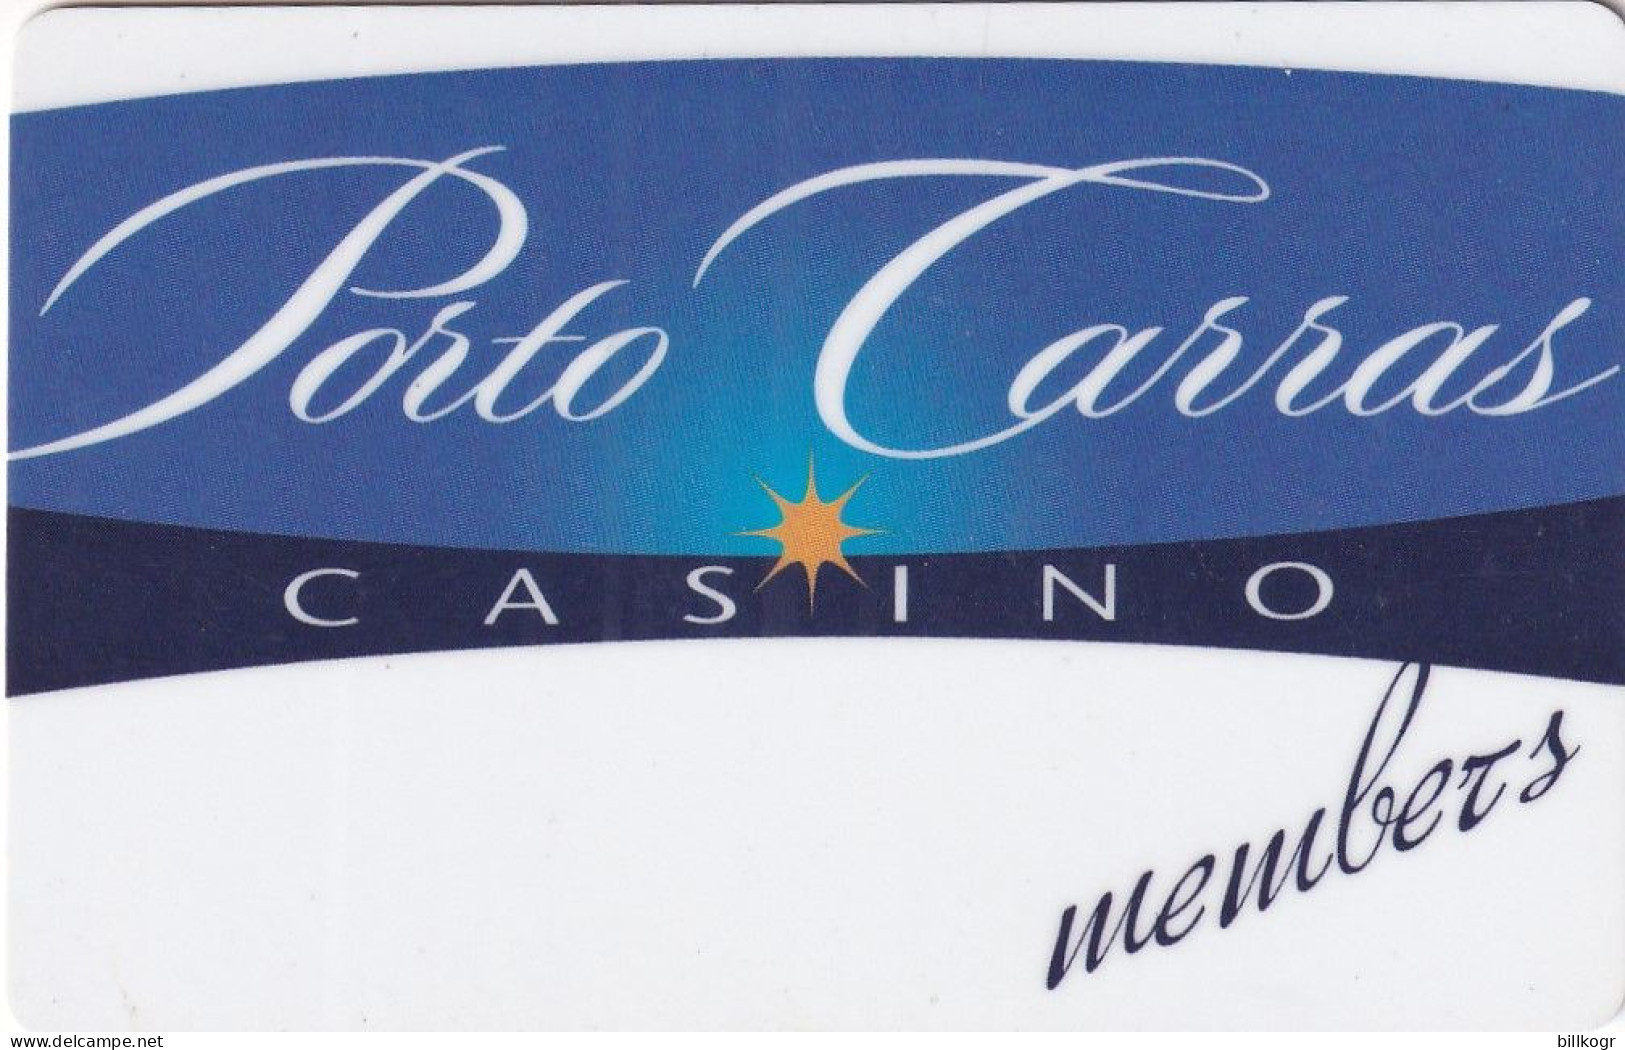 GREECE - Porto Carras, Casino Member Card, Used - Cartes De Casino